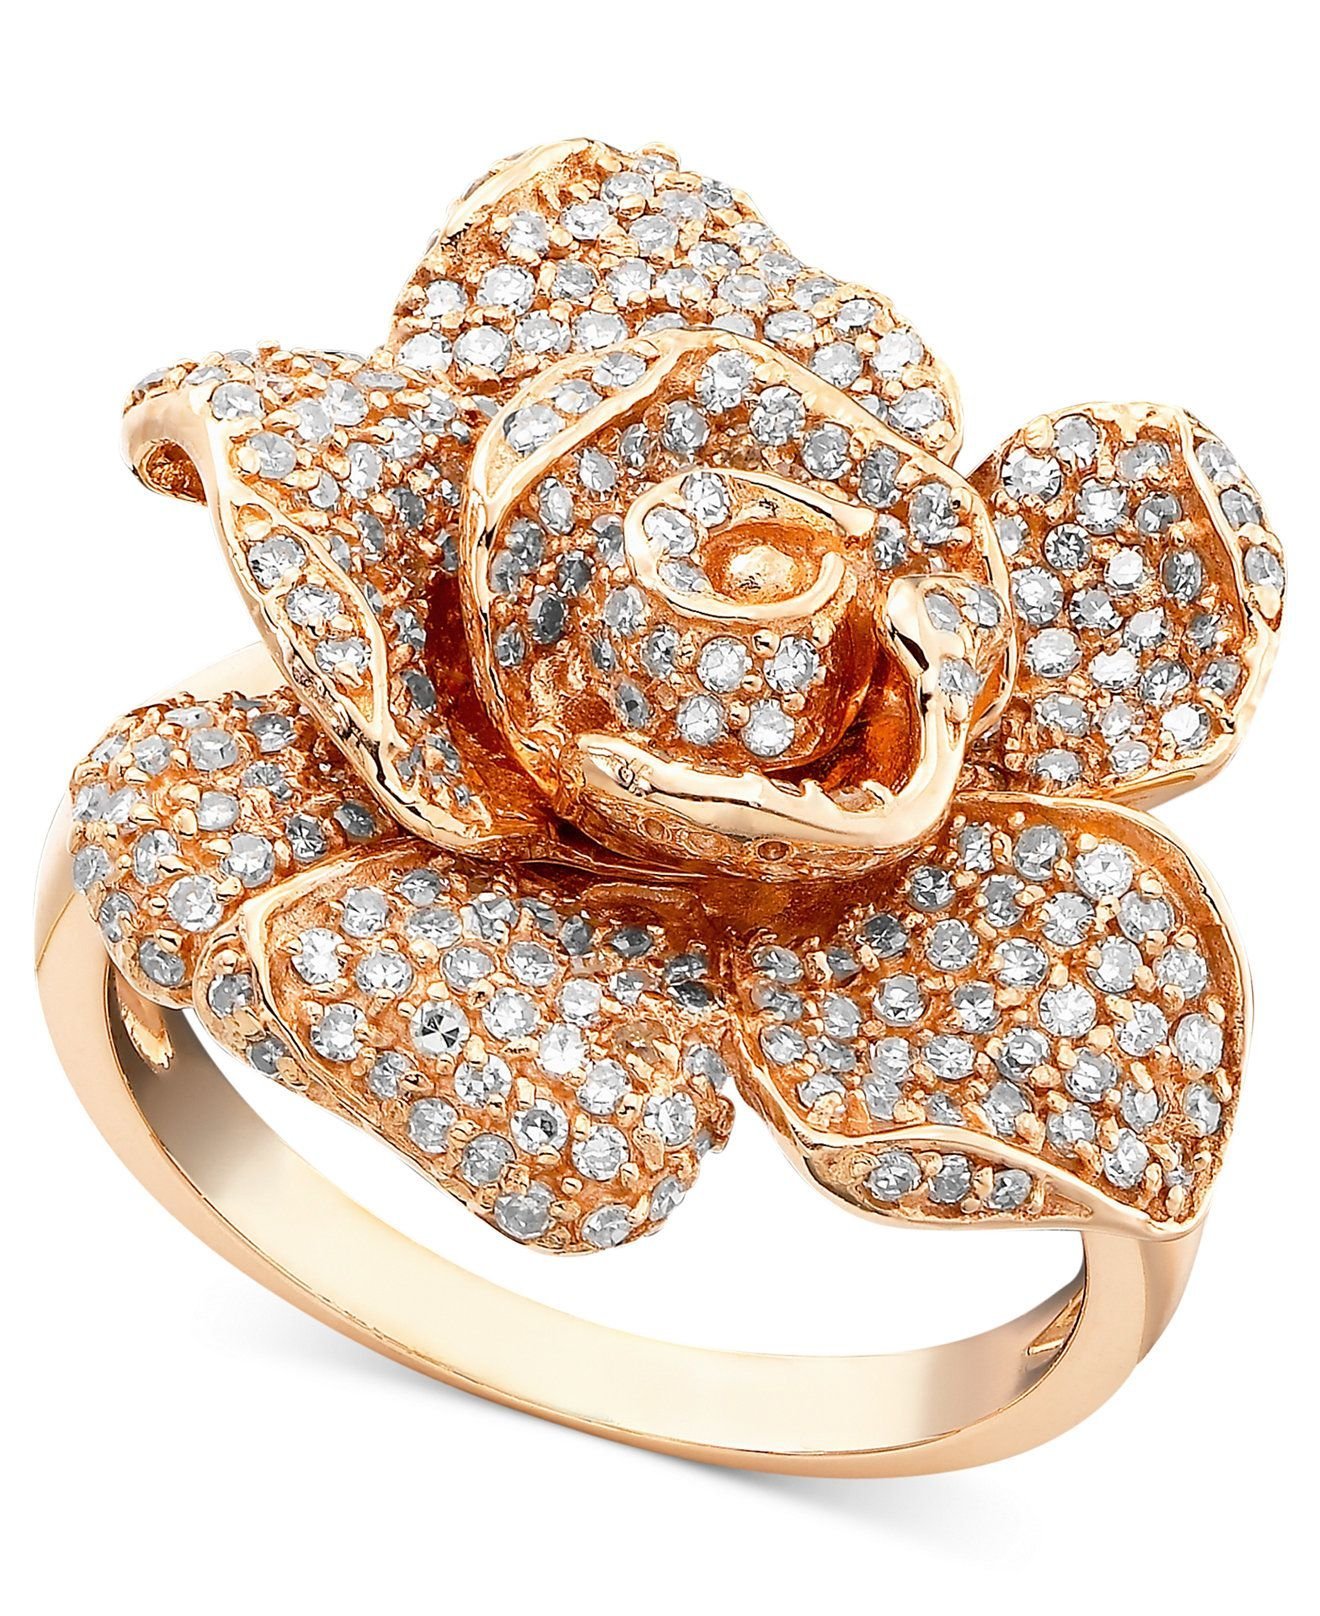 Продажа золотых изделий. Голд Даймонд ювелирные украшения. Кольцо золотой DG 14k 585. Кольцо цветок Санлайт.